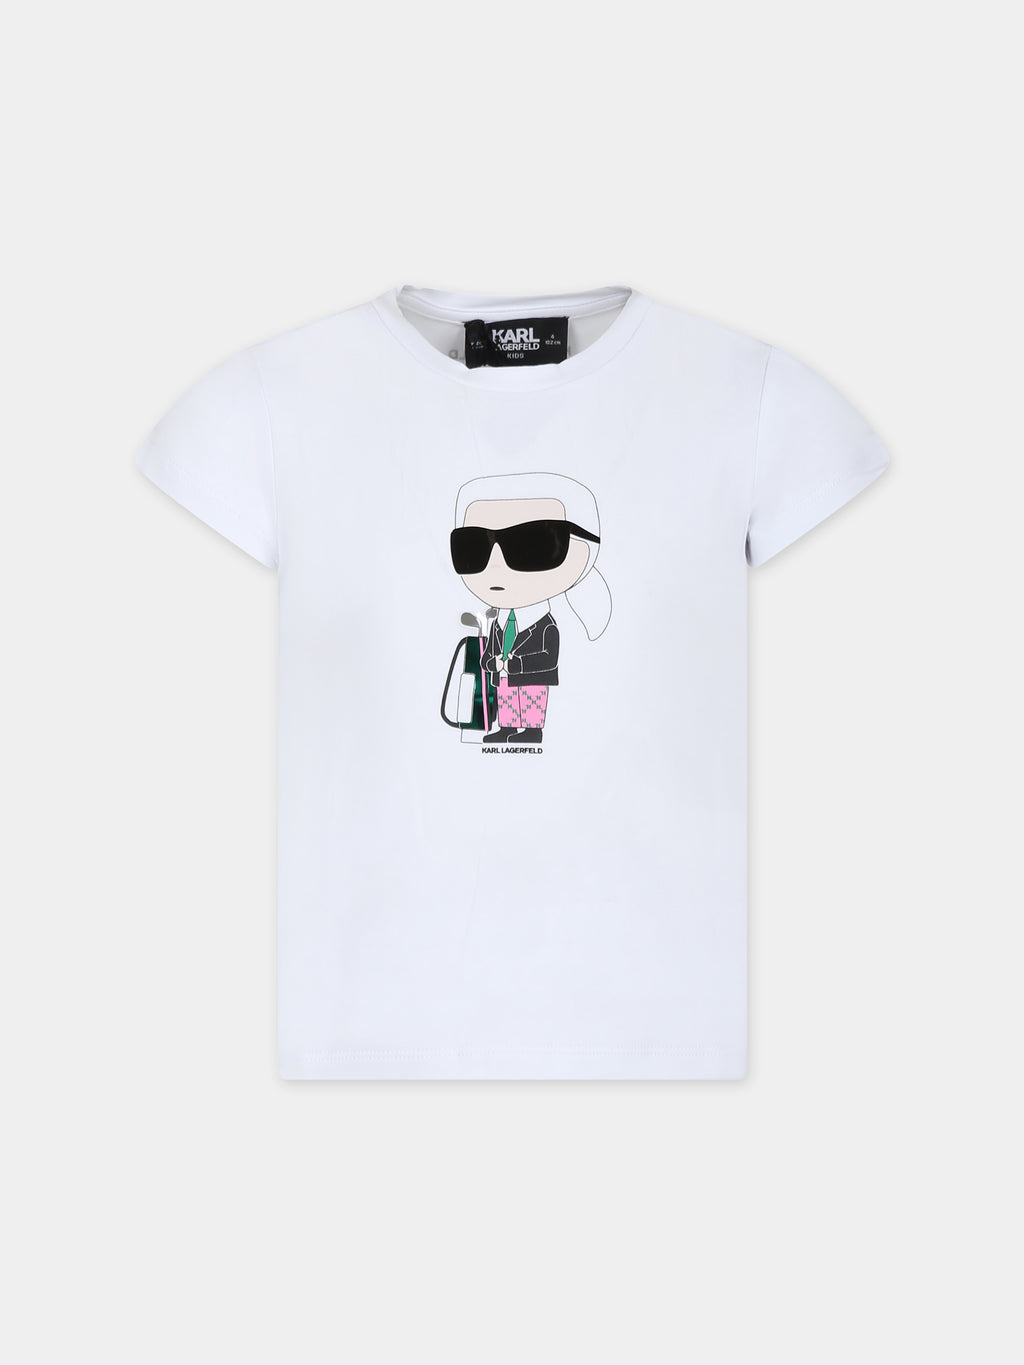 T-shirt bianca per bambina con stampa Karl e borsa da golf